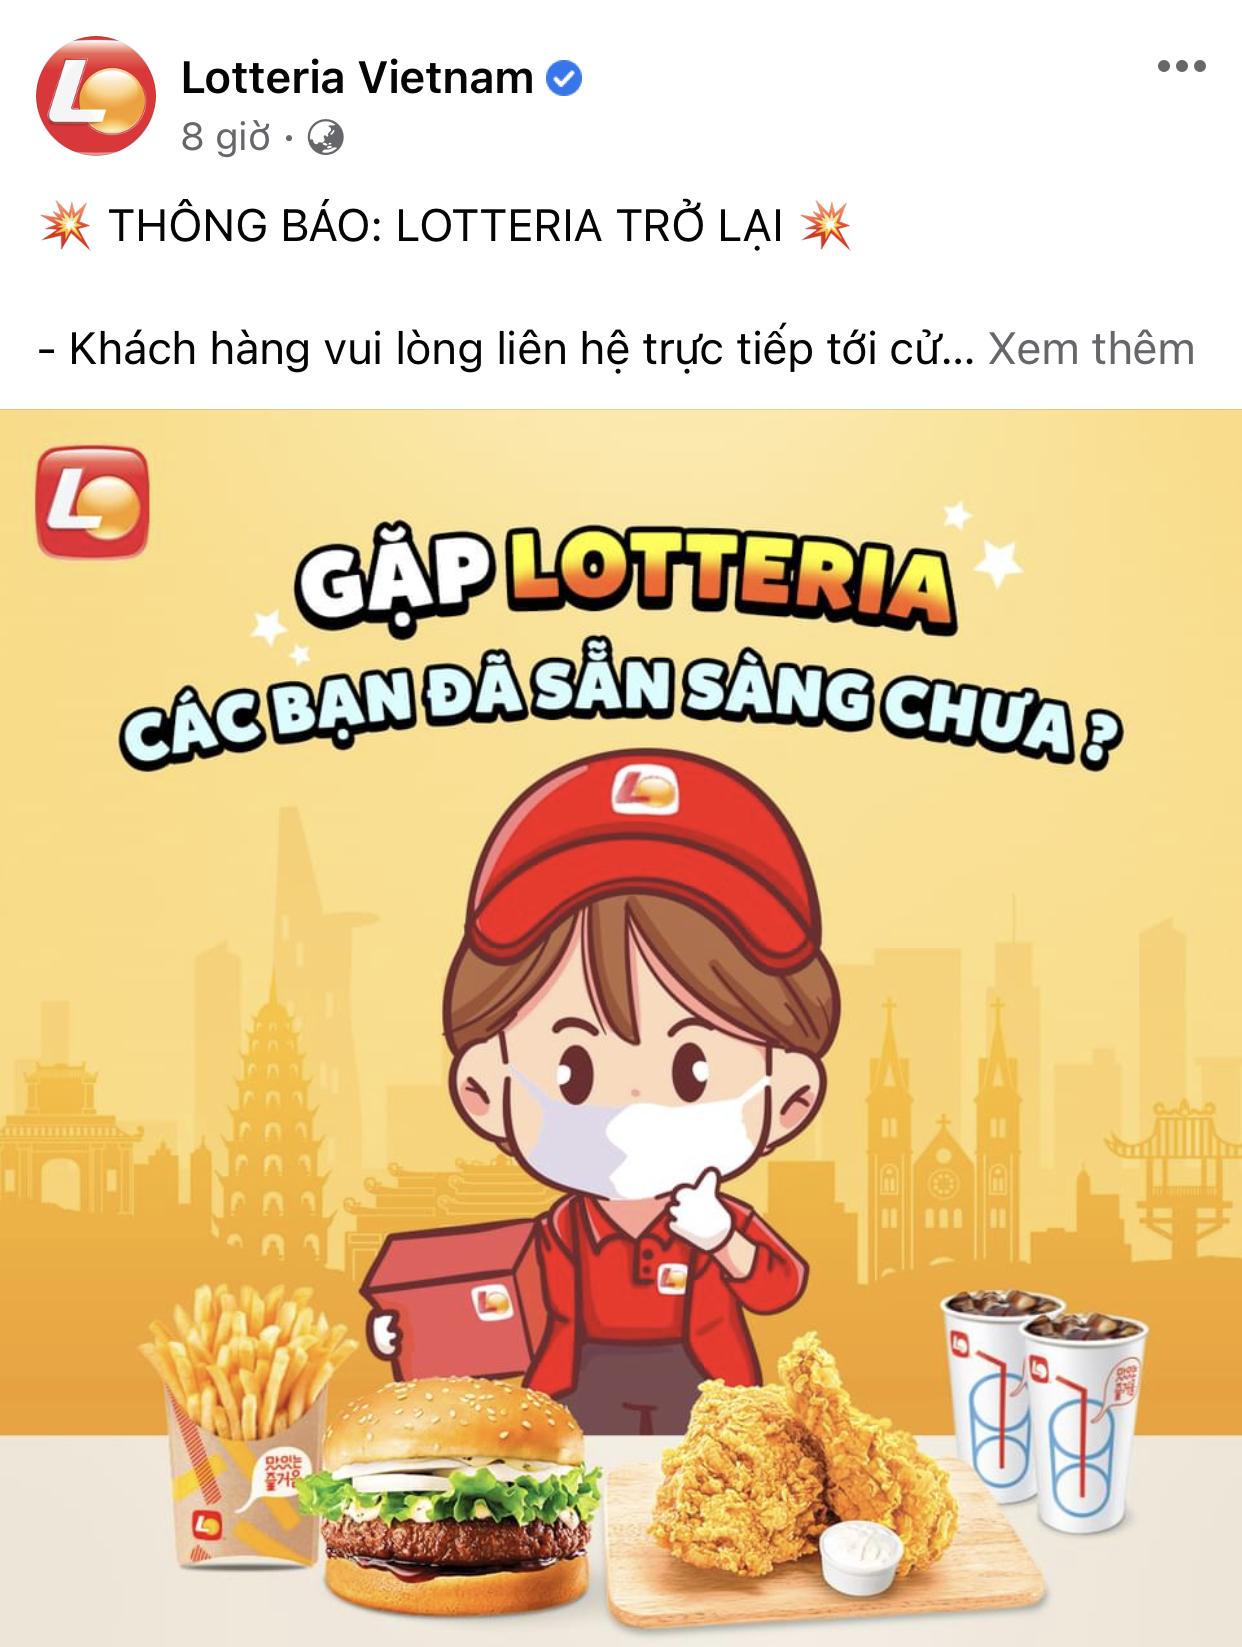 HOT: 10 hãng thức ăn nhanh đình đám nhất Việt Nam thông báo thời gian mở cửa trở lại, Sài Gòn có 2 nơi duy nhất comeback - Ảnh 10.